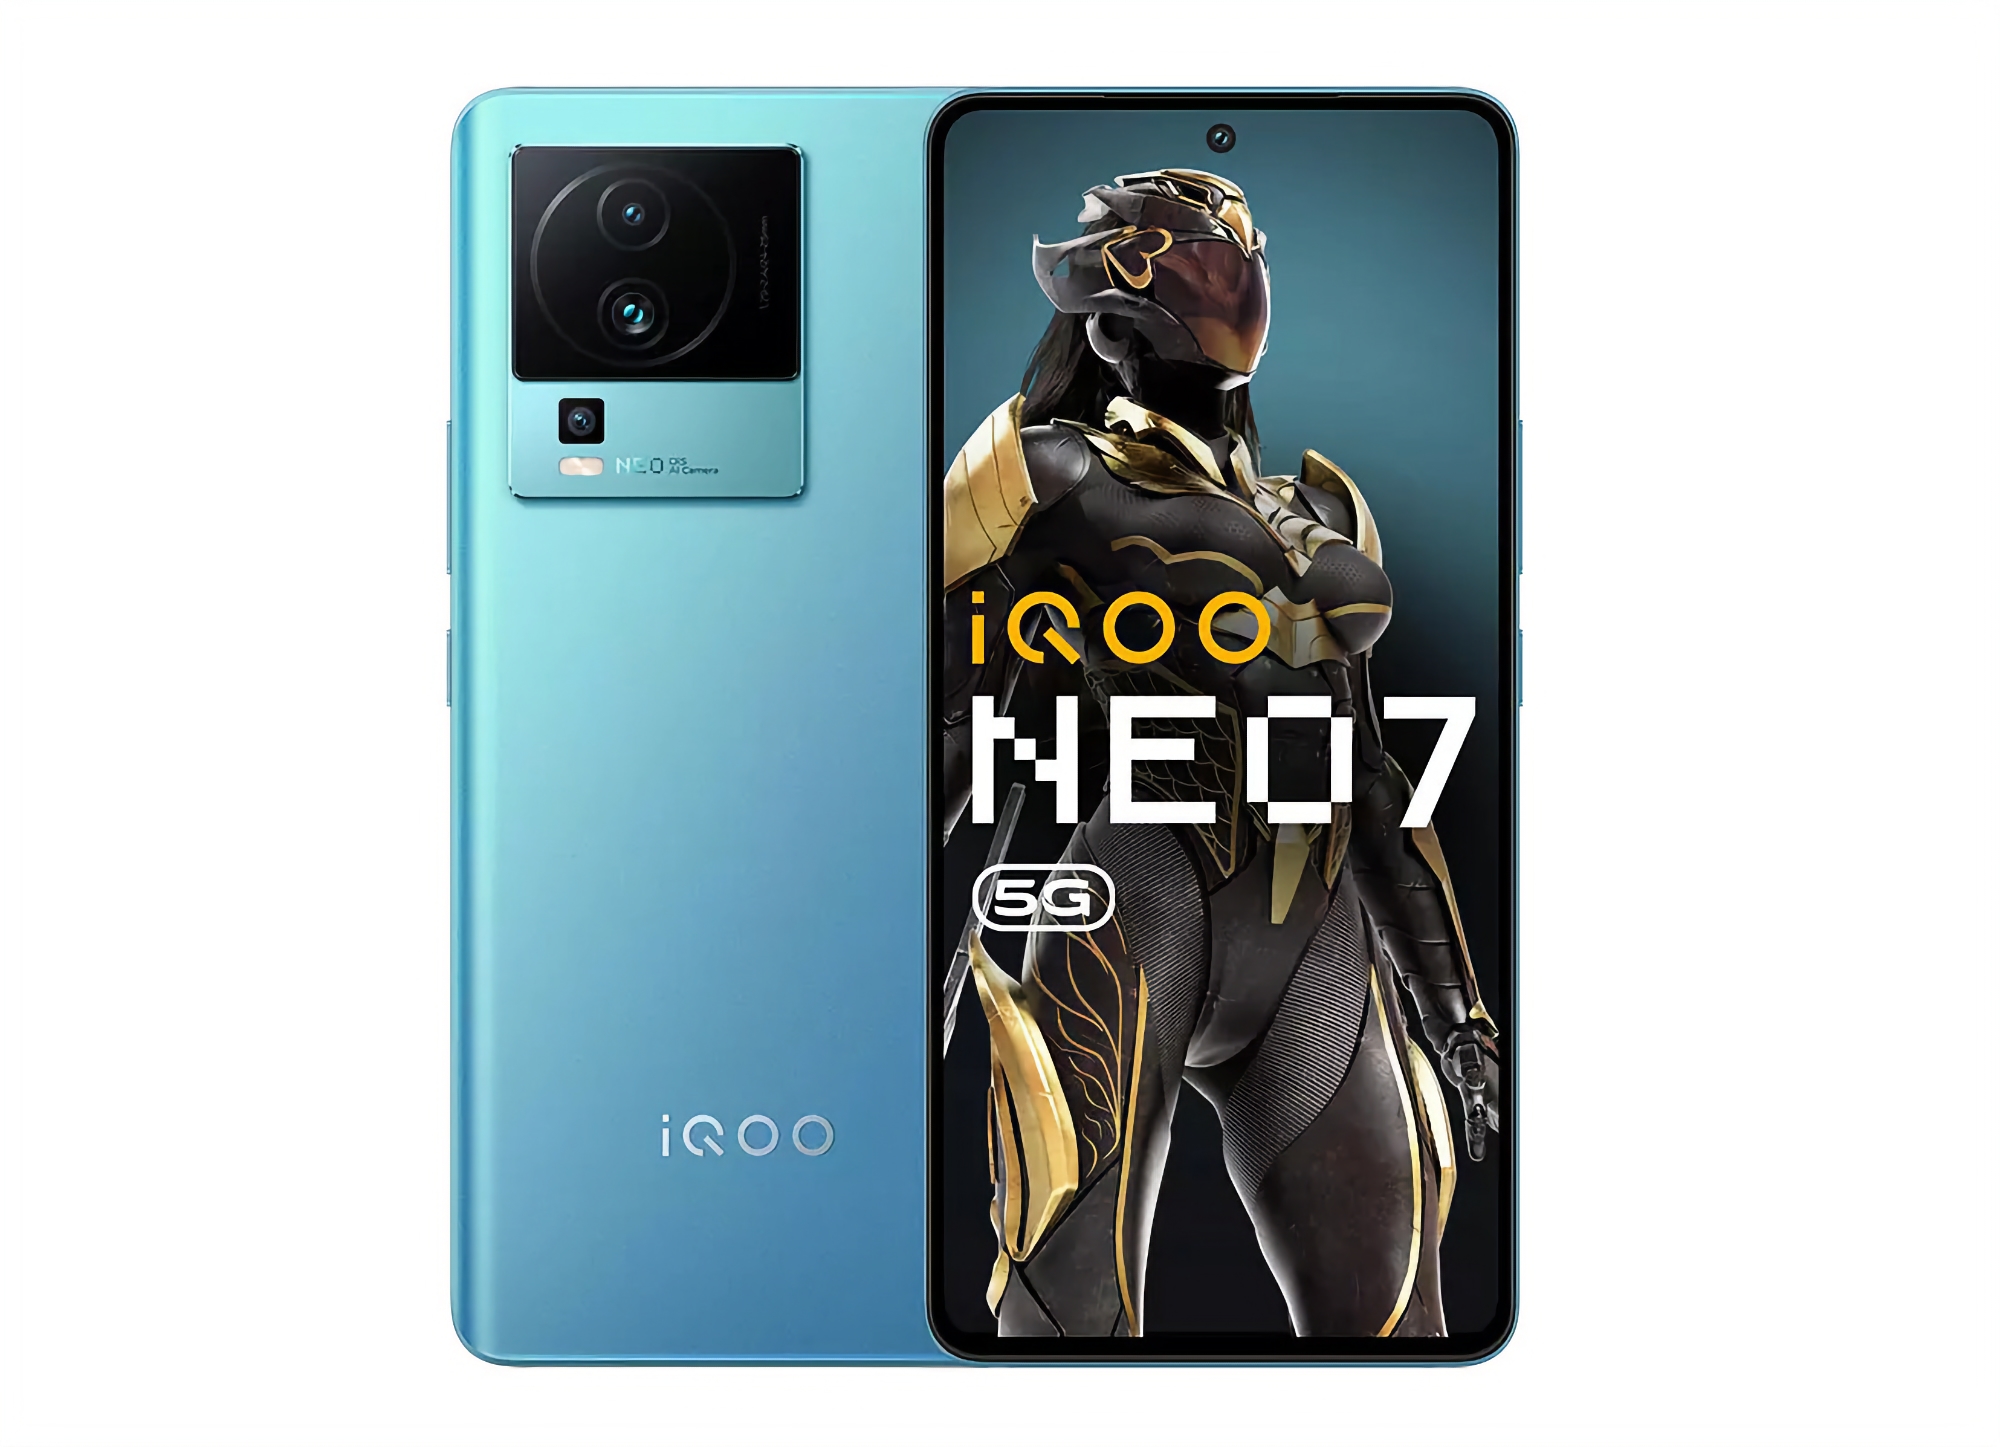 vivo enthüllt iQOO Neo 7: 120Hz OLED-Bildschirm, MediaTek Dimensity 8200 Chip und 120W Ladegerät für $362